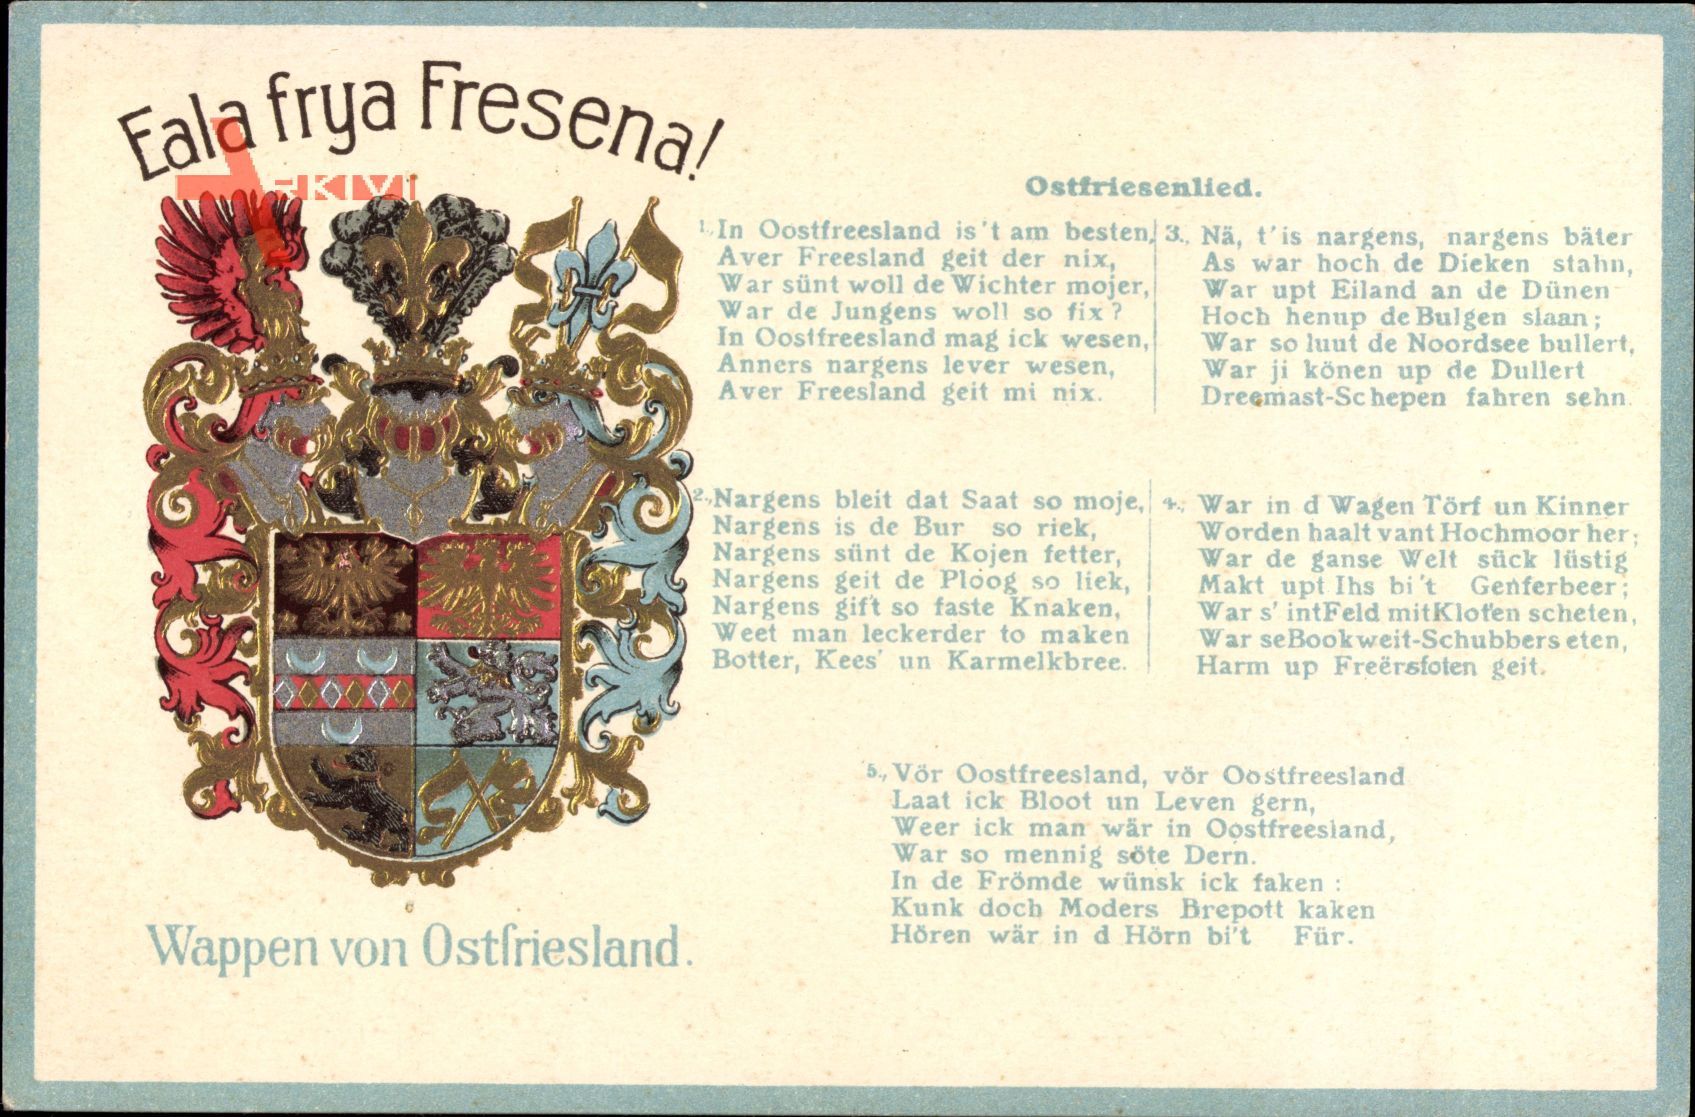 Wappen Ostfriesland, Eala frya Fresena, Ostfriesenlied